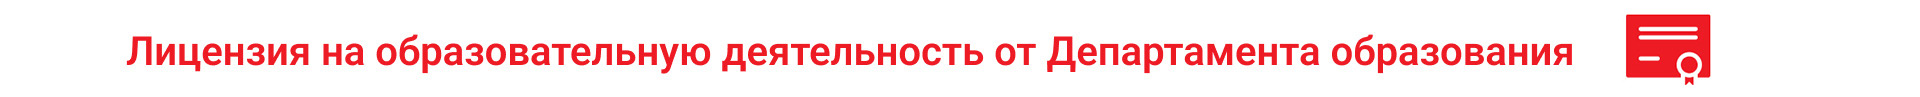 Лицензия Министерства Образования РФ